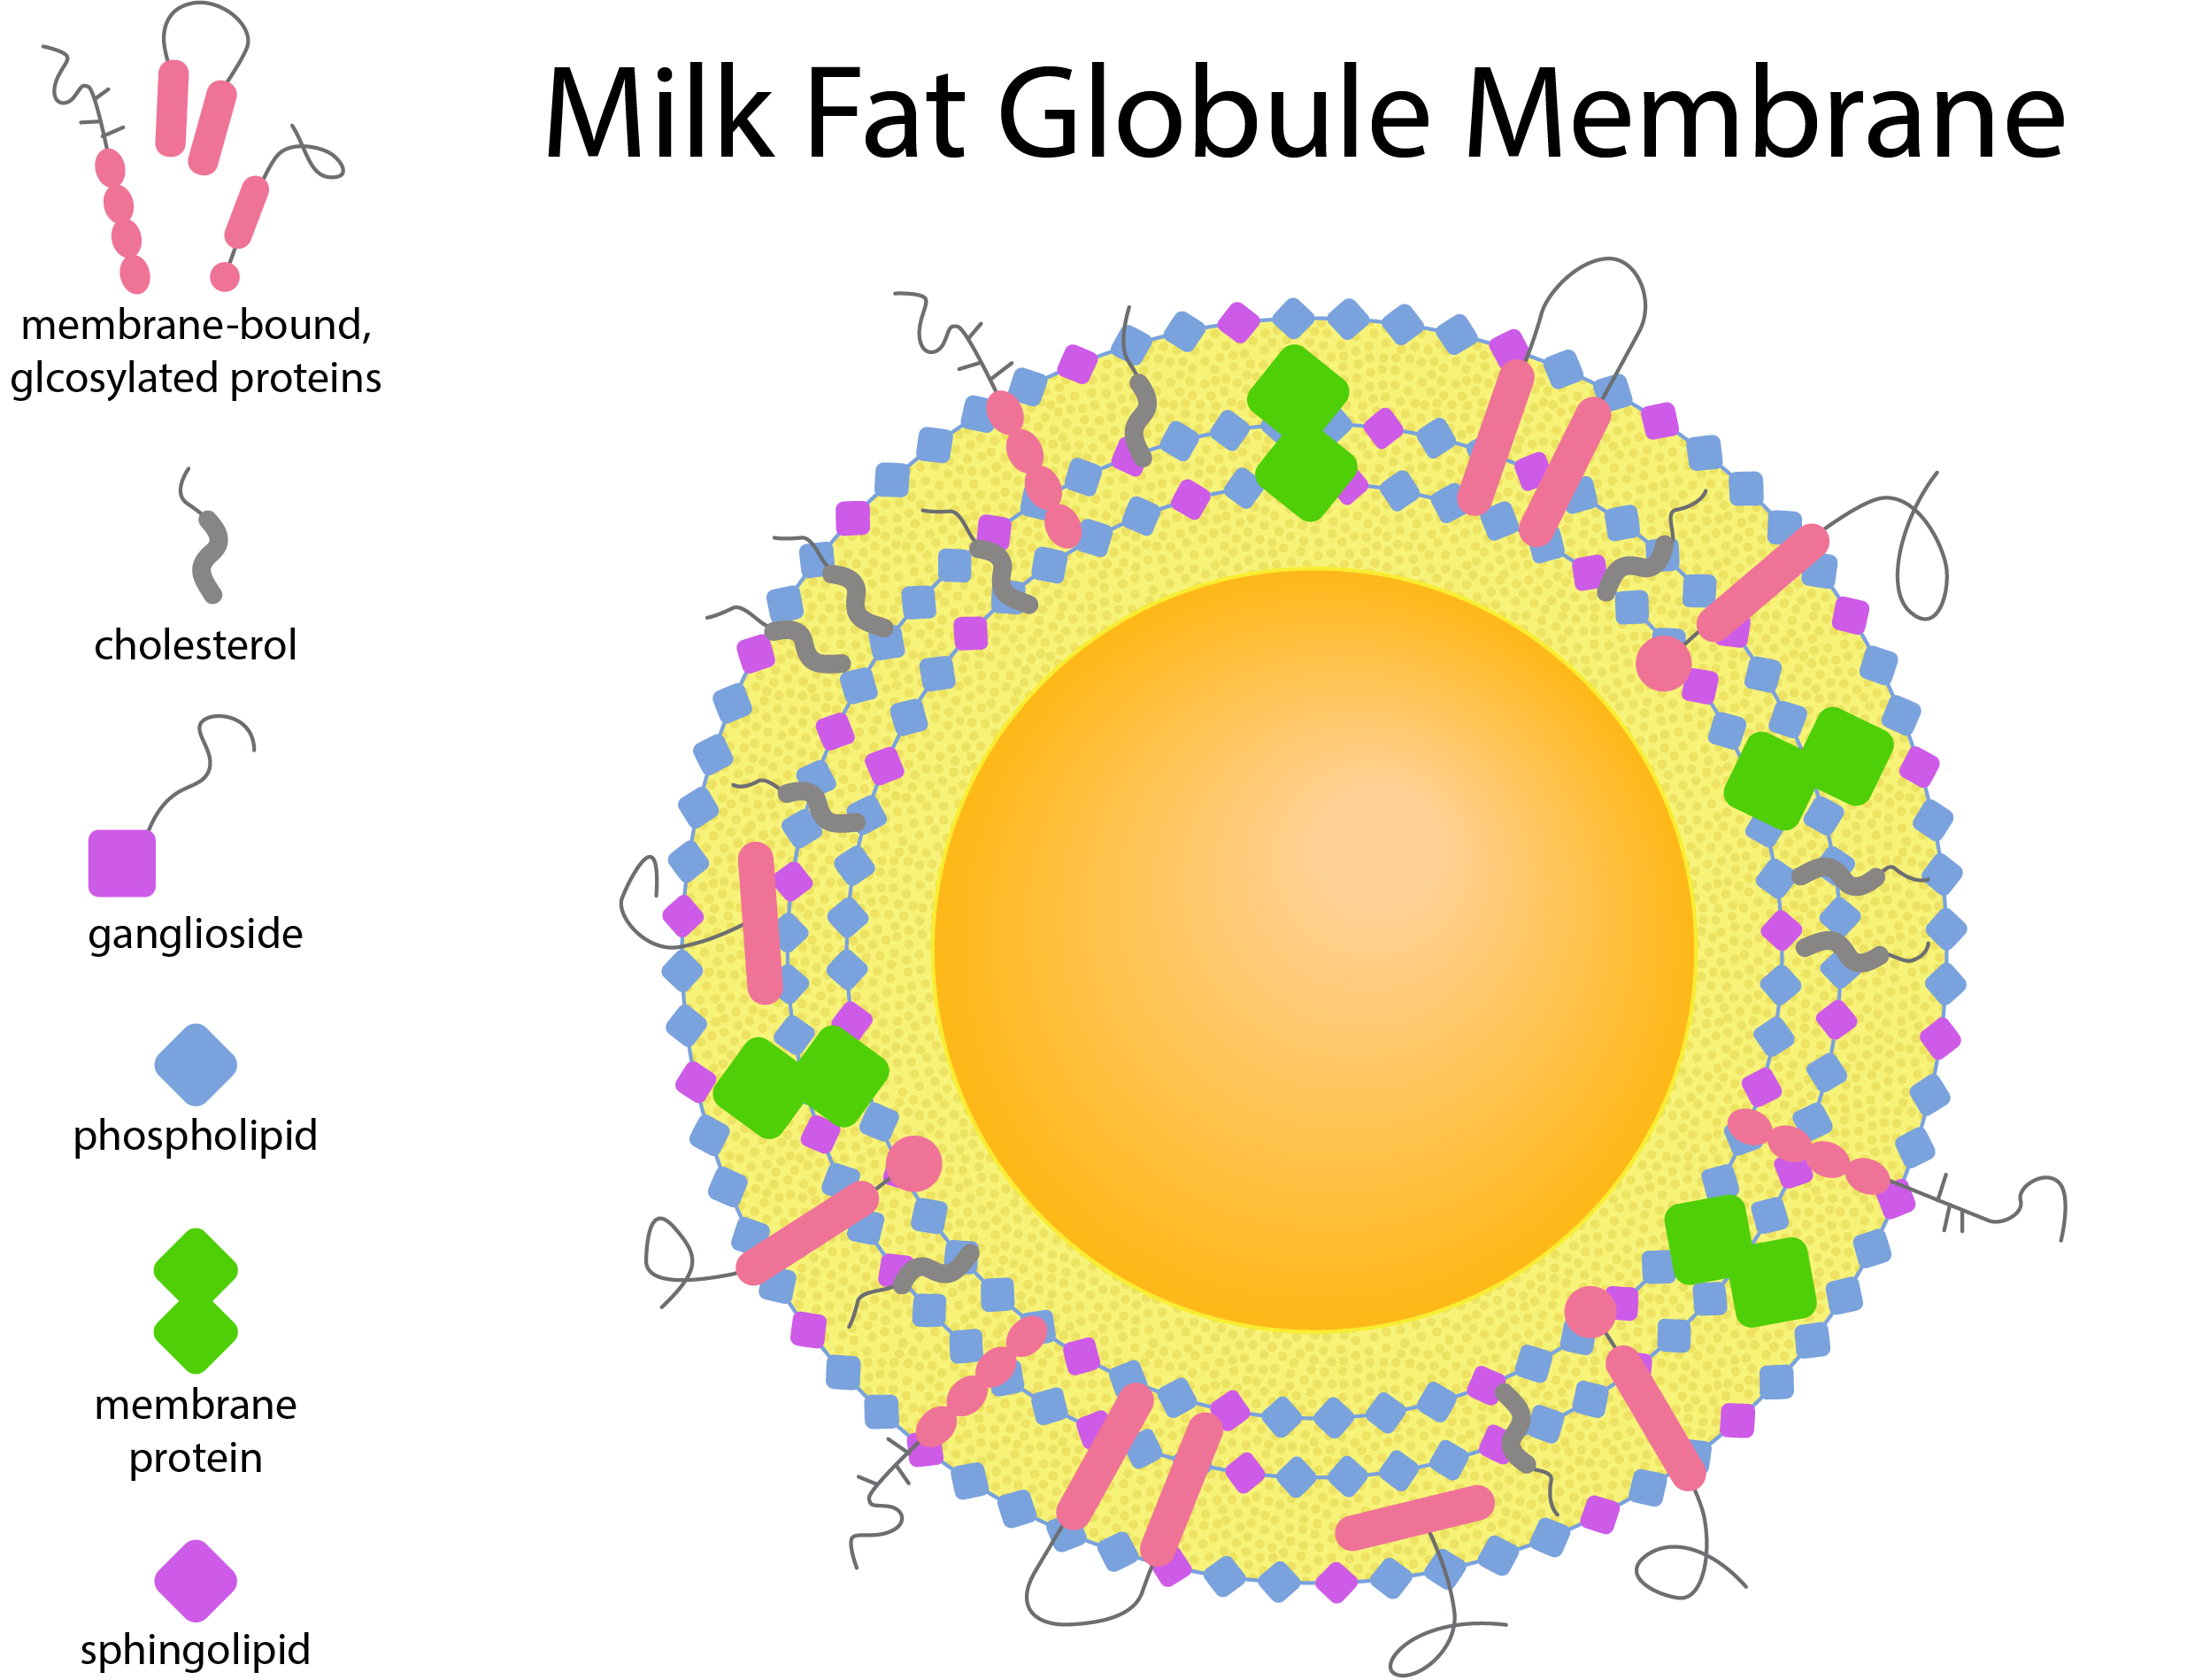 "Image of milk fat globule membrane makeup"